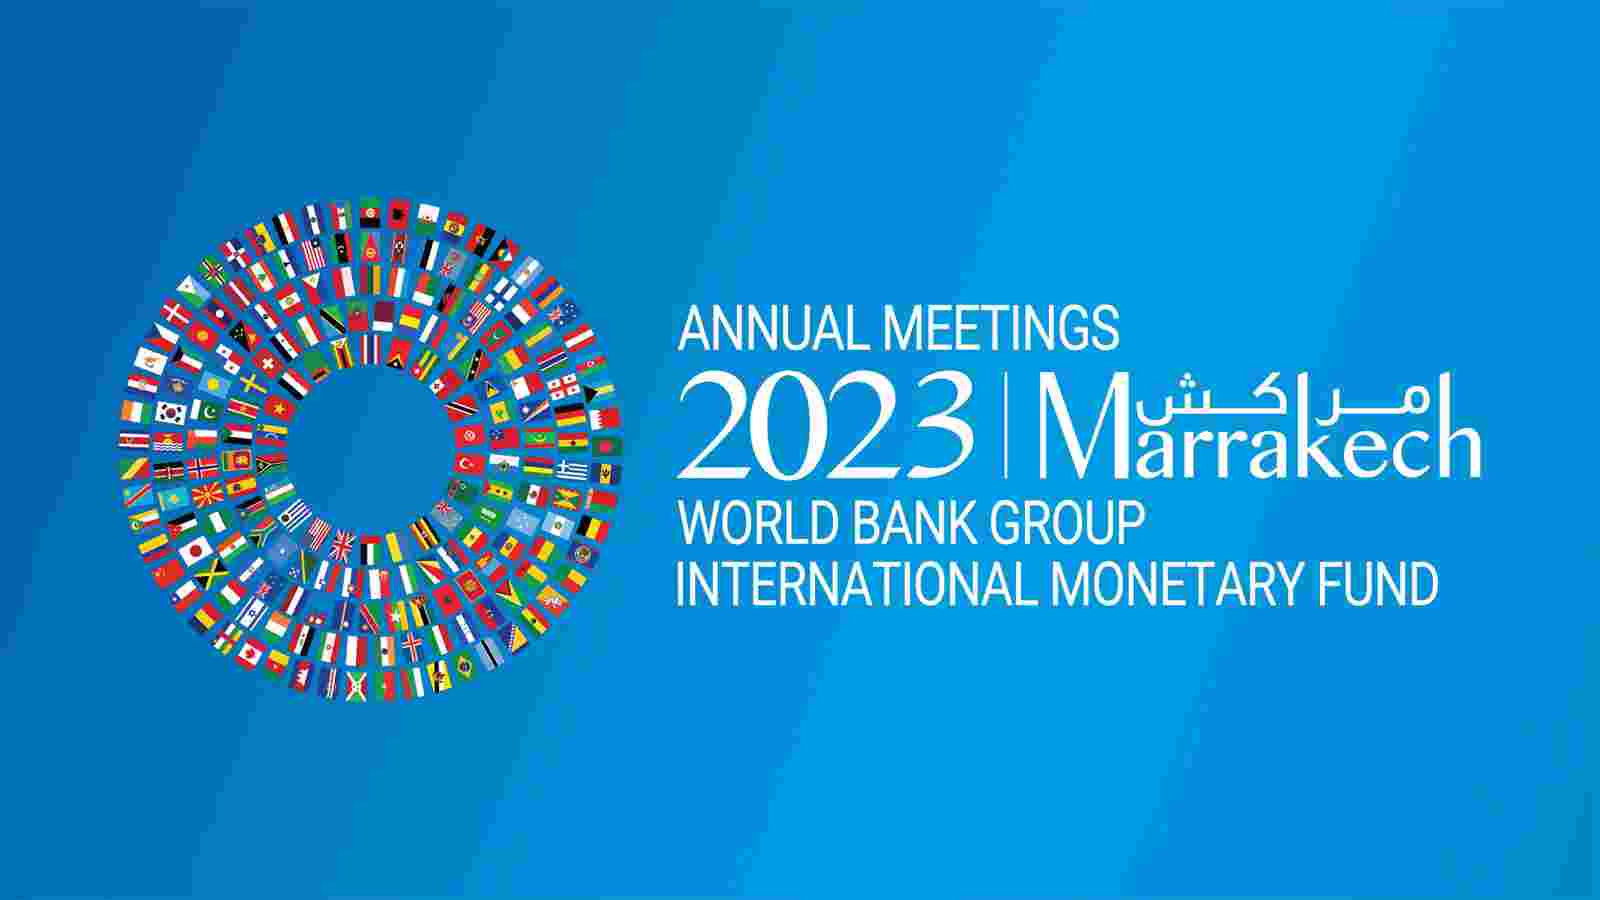 ნათია თურნავა საერთაშორისო სავალუტო ფონდისა და მსოფლიო ბანკის ყოველწლიურ შეხვედრებში მიიღებს მონაწილეობას